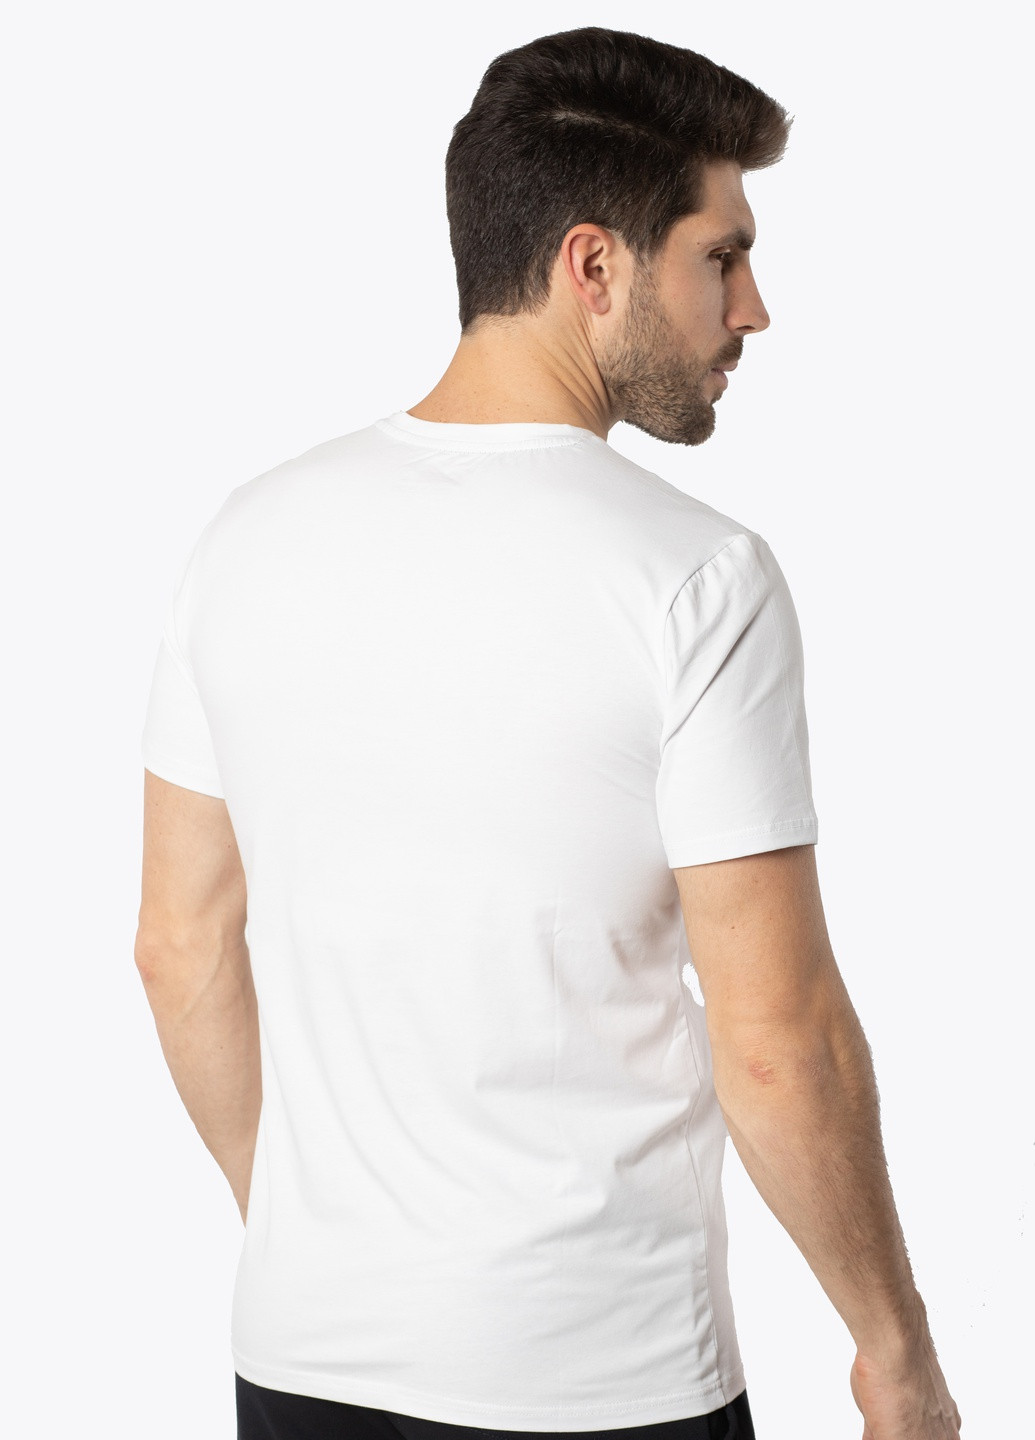 Белая футболка мужская Avecs